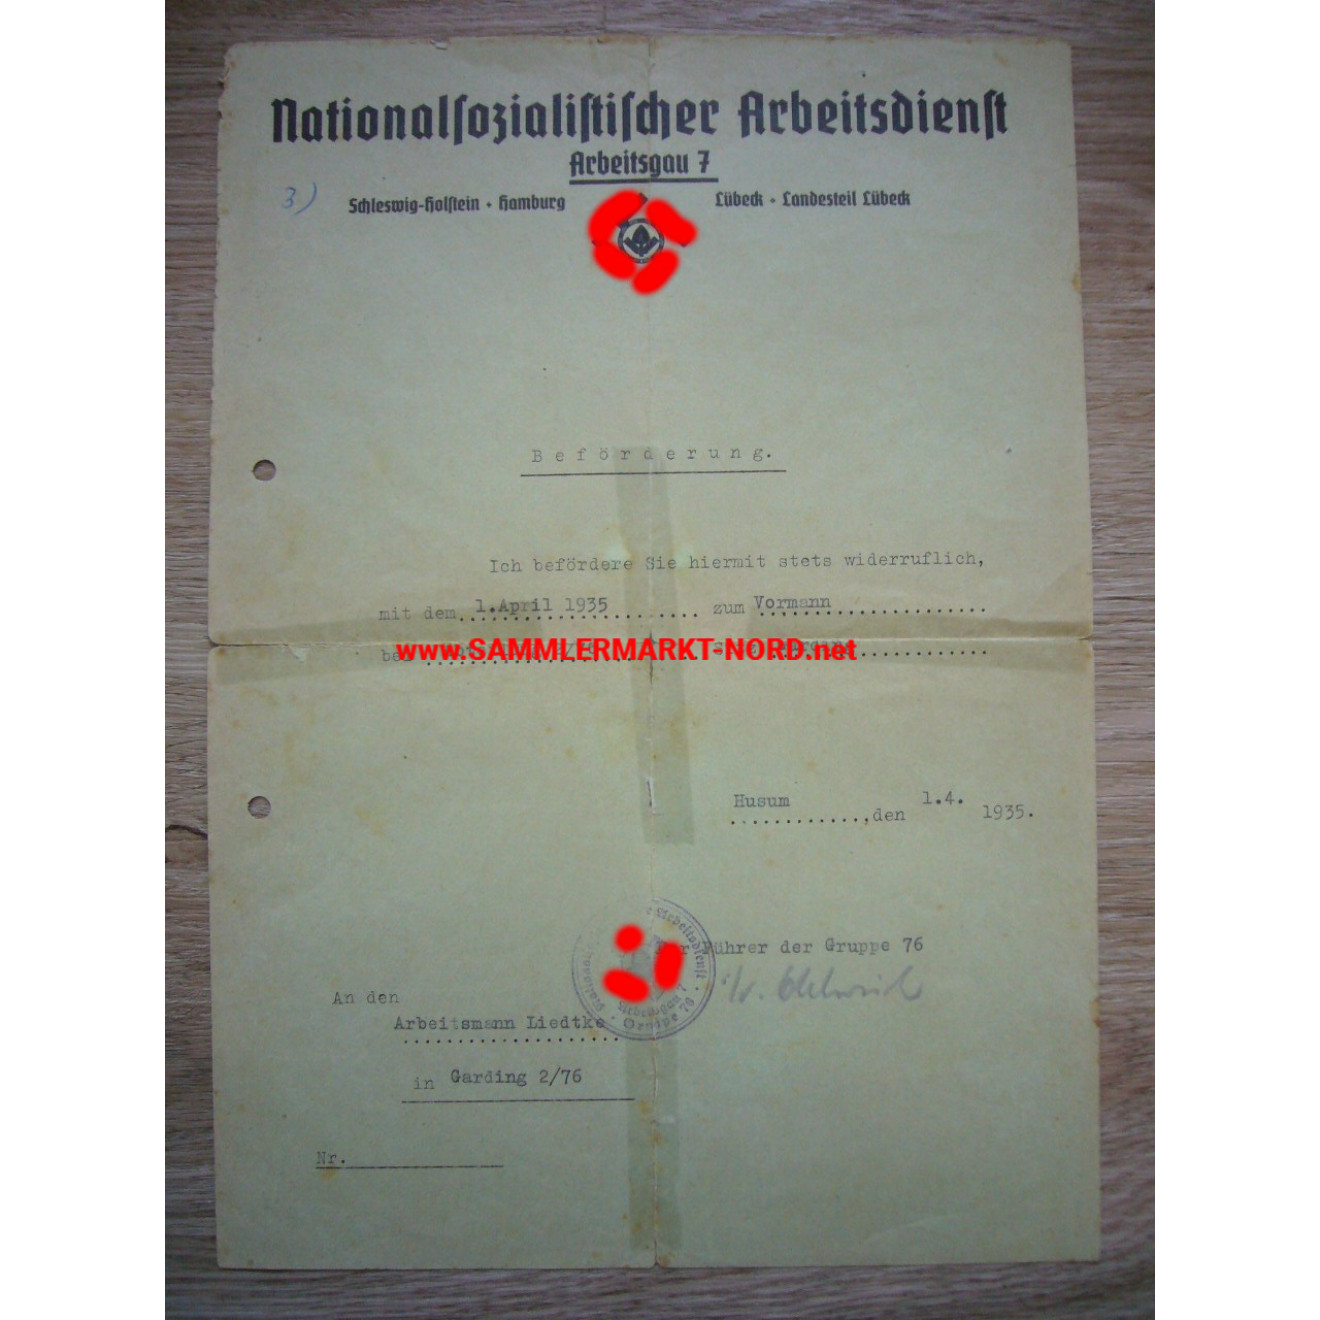 NS Arbeitsdienst, Arbeitsgau 7 - Beförderungsurkunde - 1935